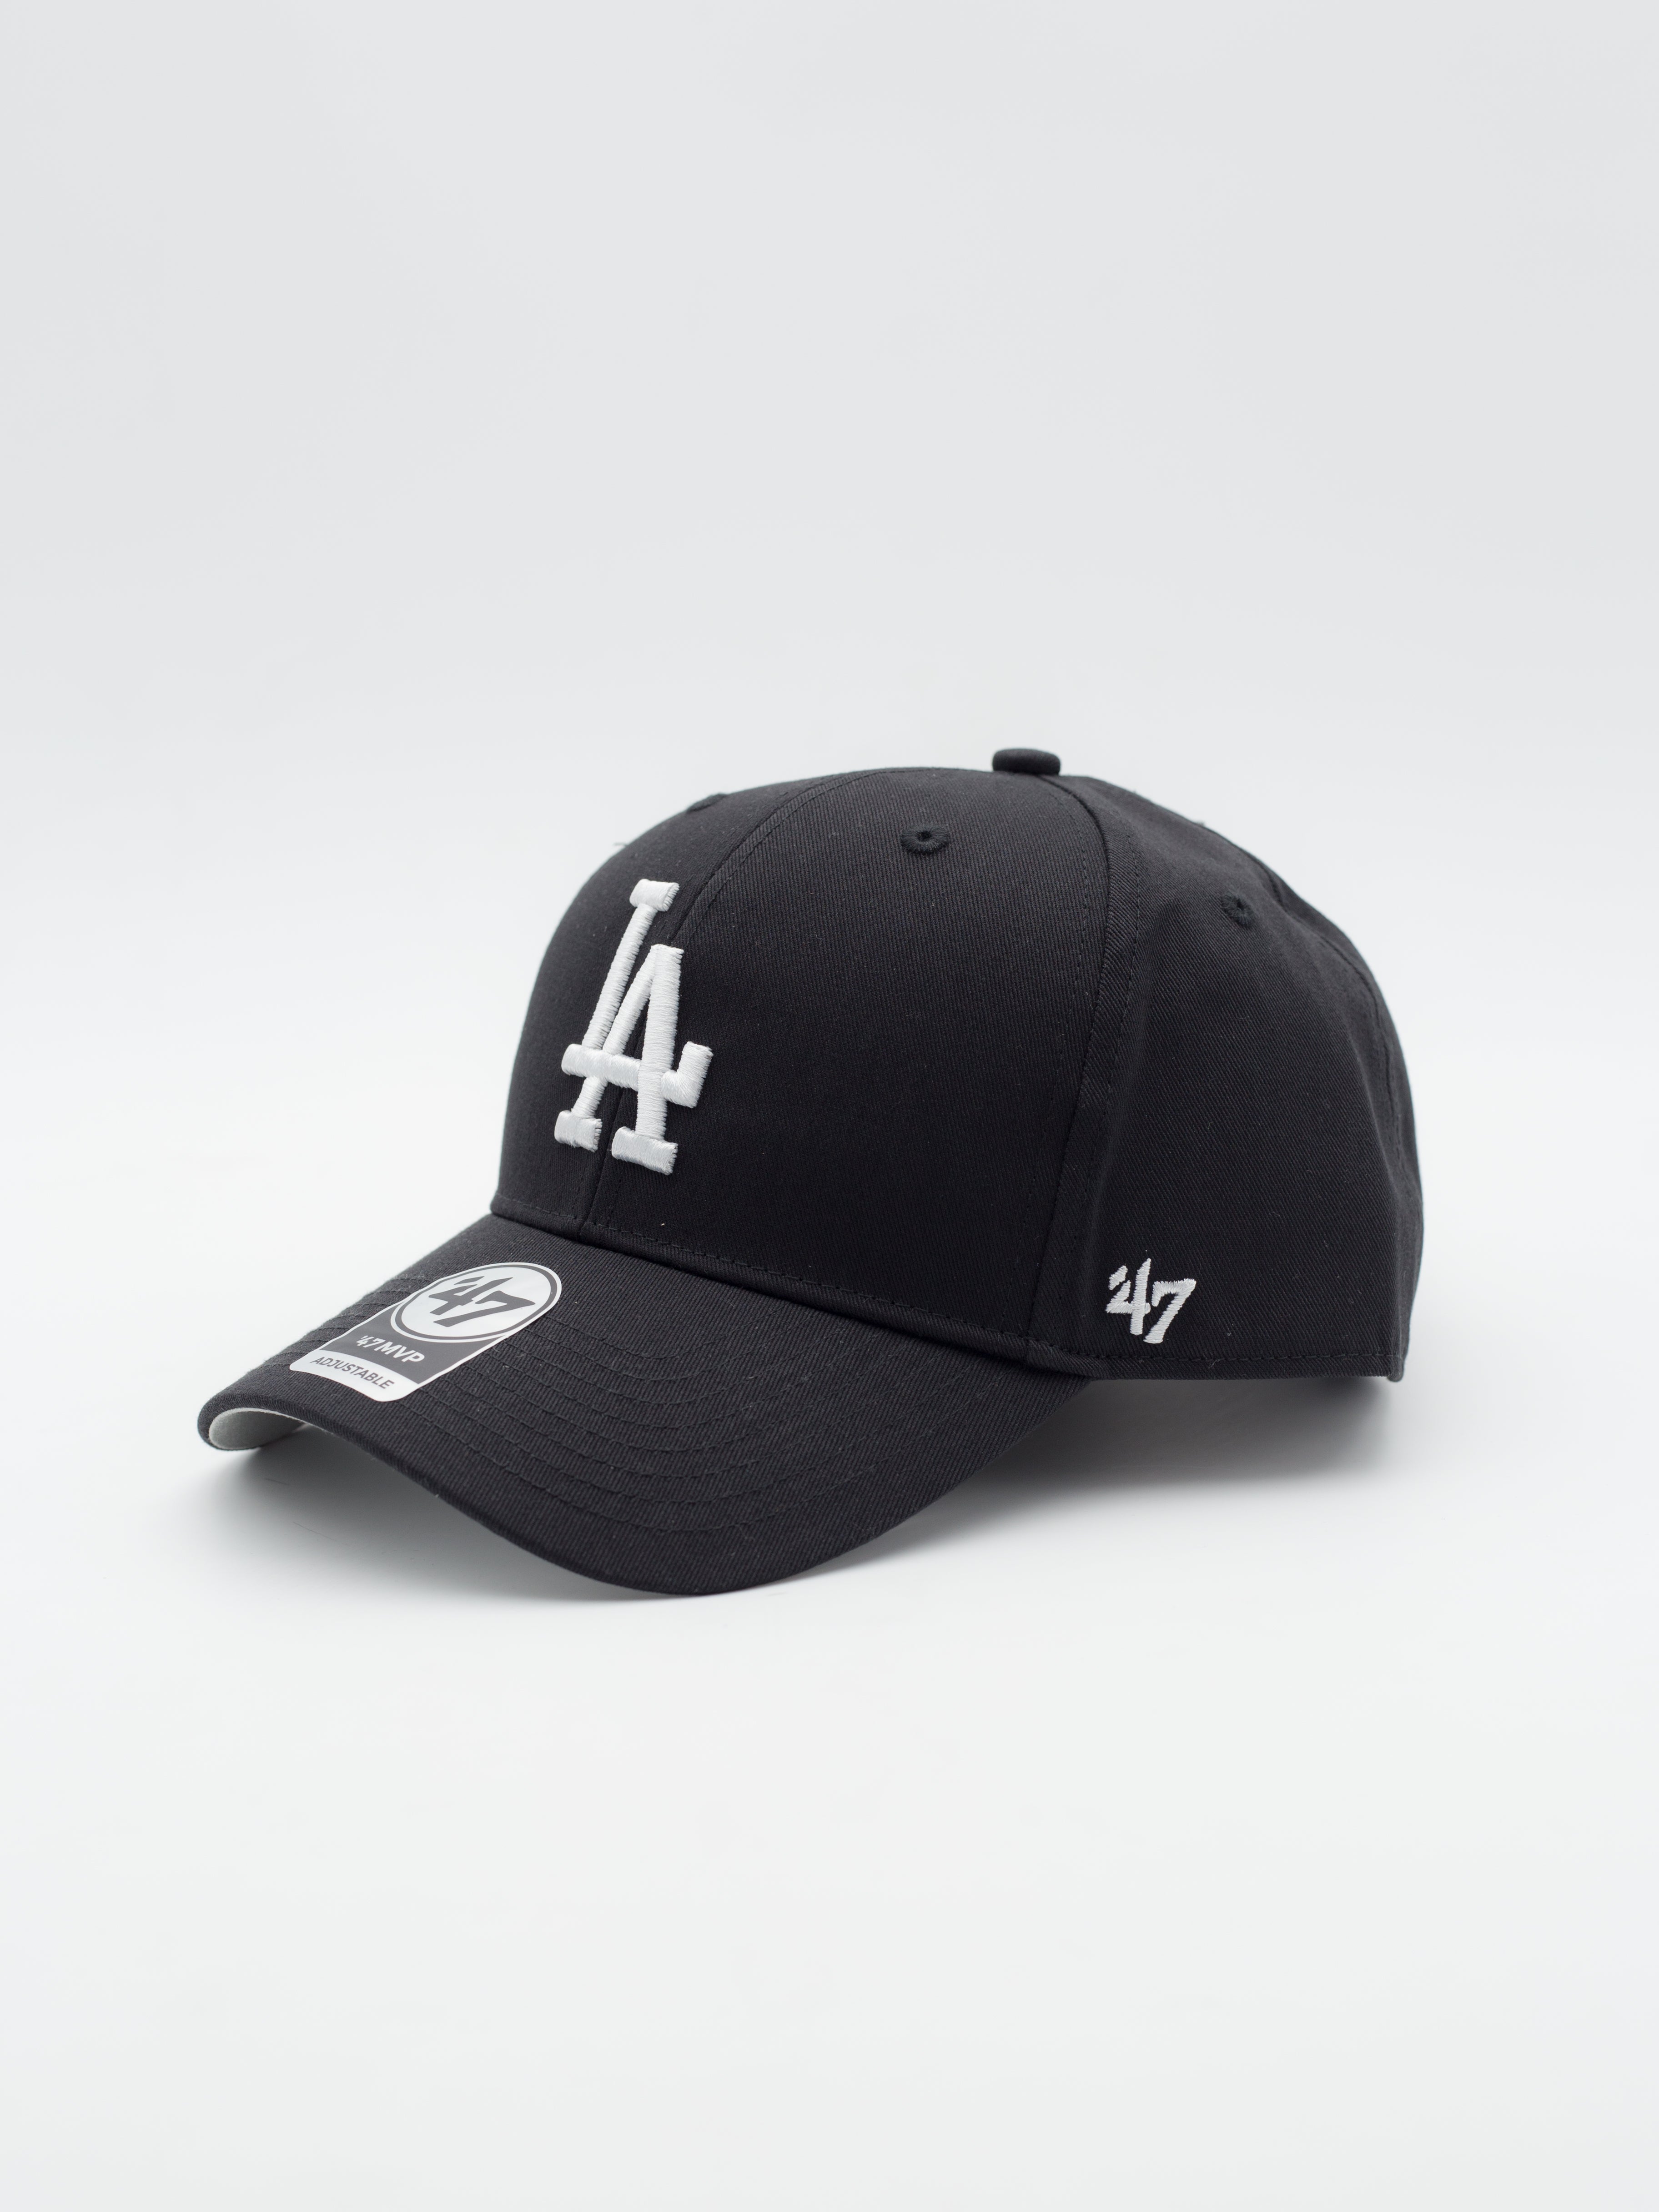 Gorras De Los Angeles Dodgers